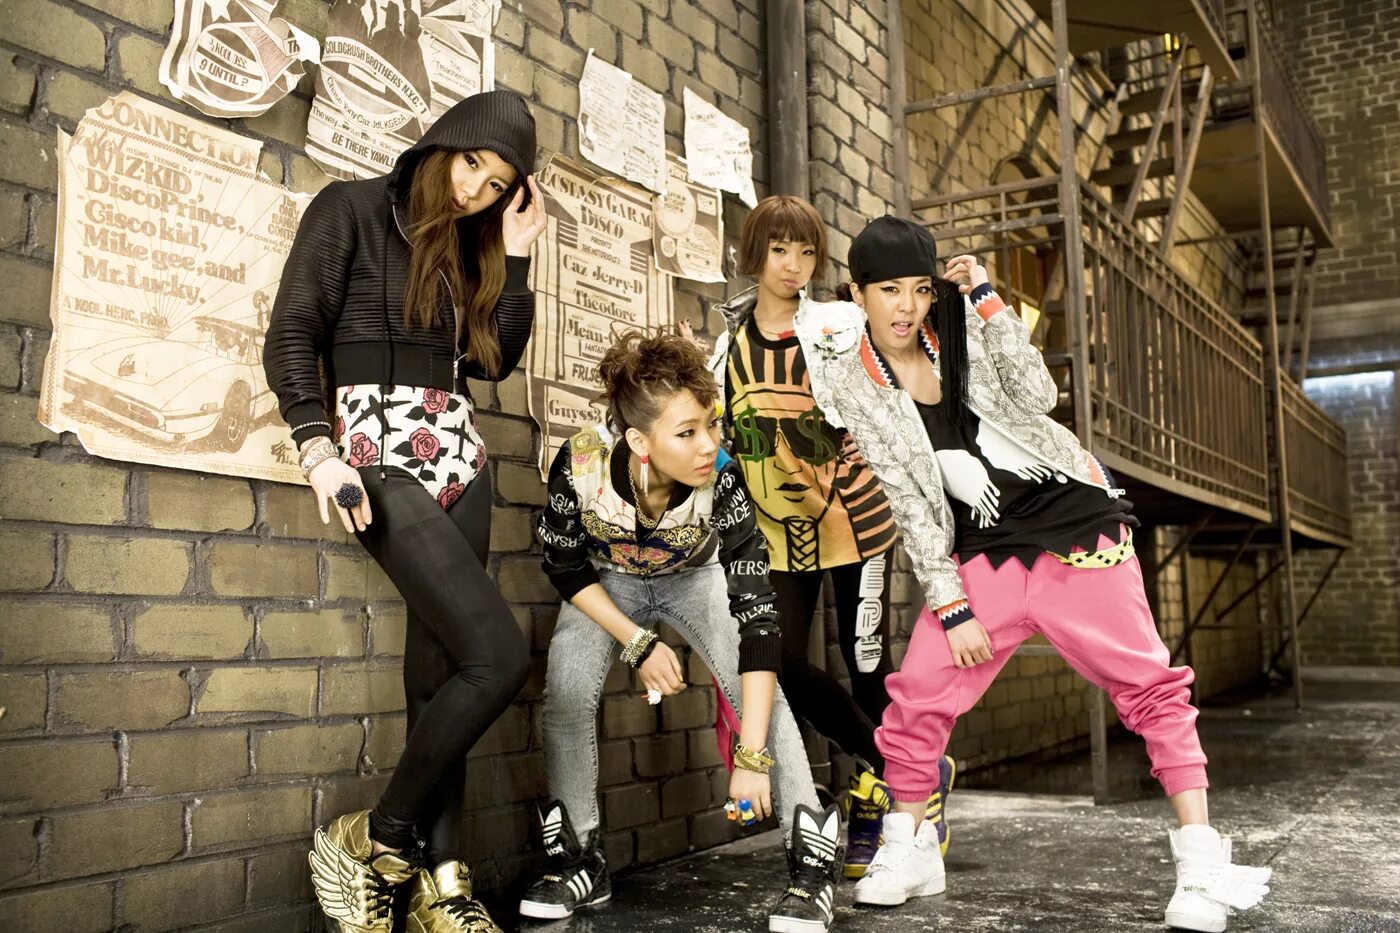 Y3k стиль. 2ne1 корейский музыкальная группа. Хип хоп субкультура стиль одежды. Корейская субкультура k-Pop. Корейский хип хоп.